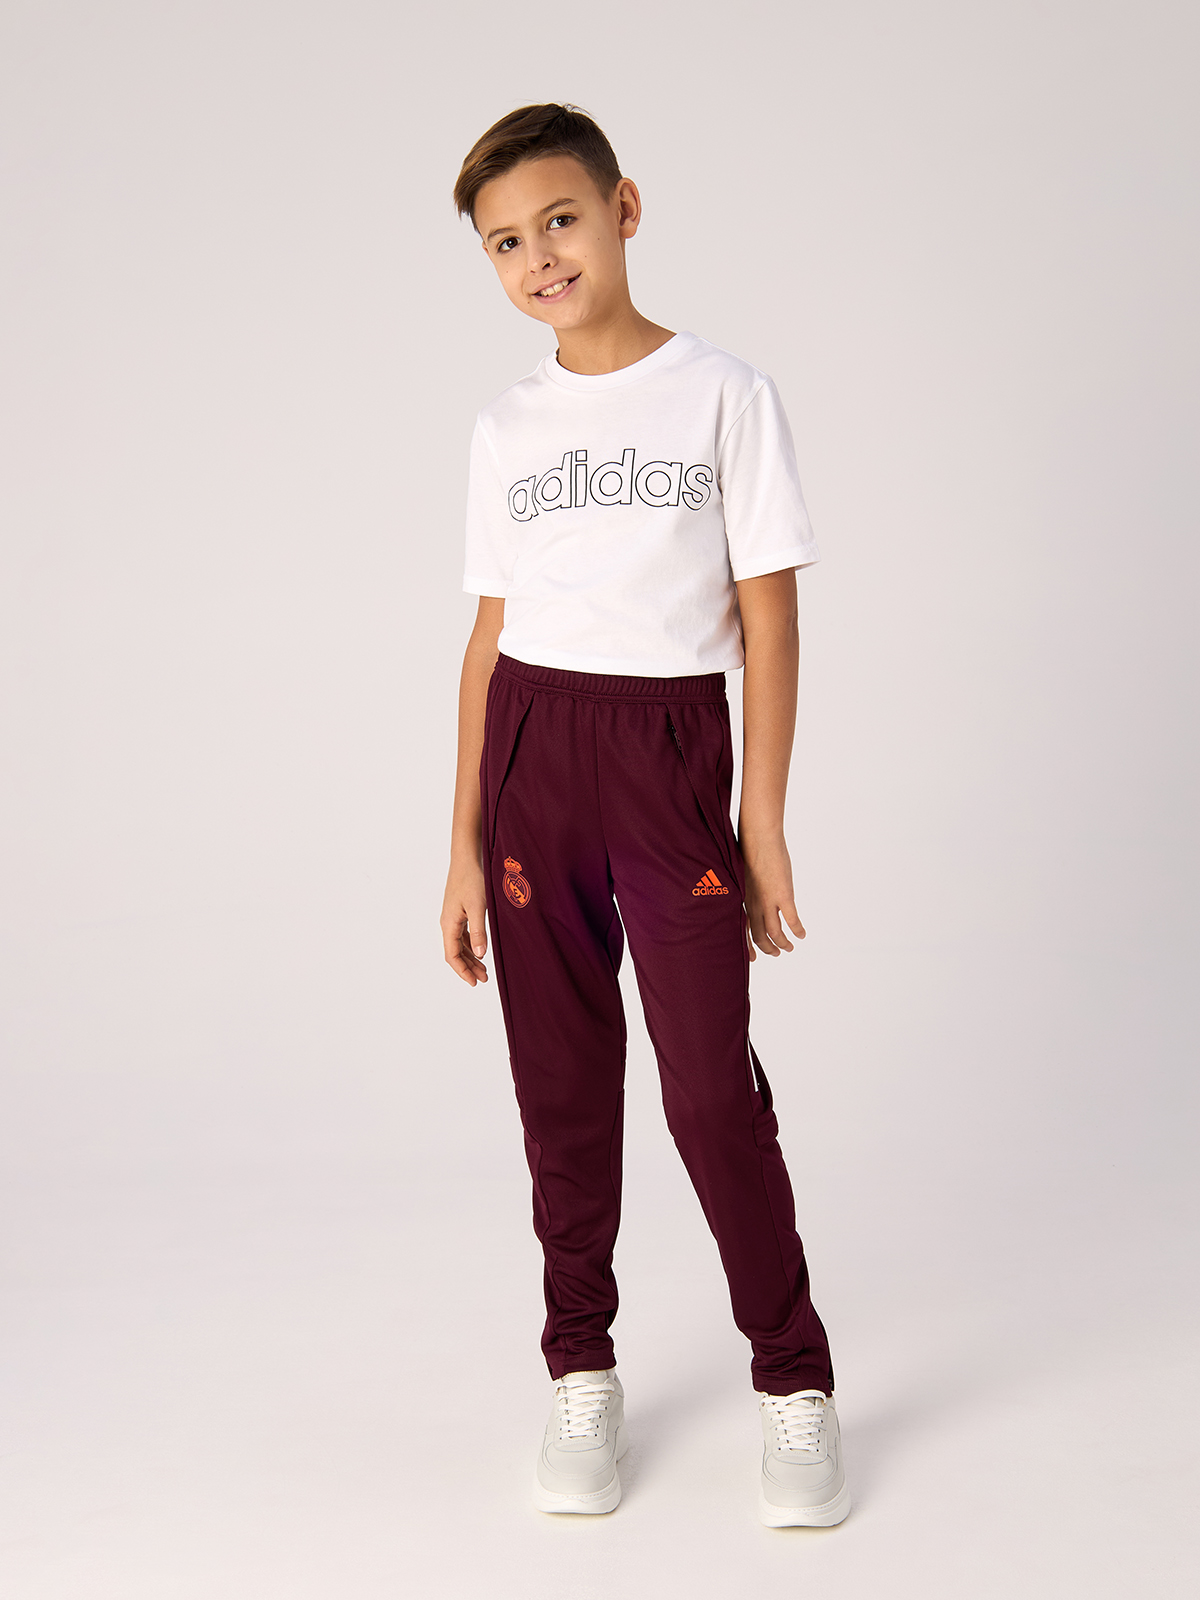 Штаны Adidas Real Eu Tr Pny, для мальчиков, FQ7894, размер 164 см